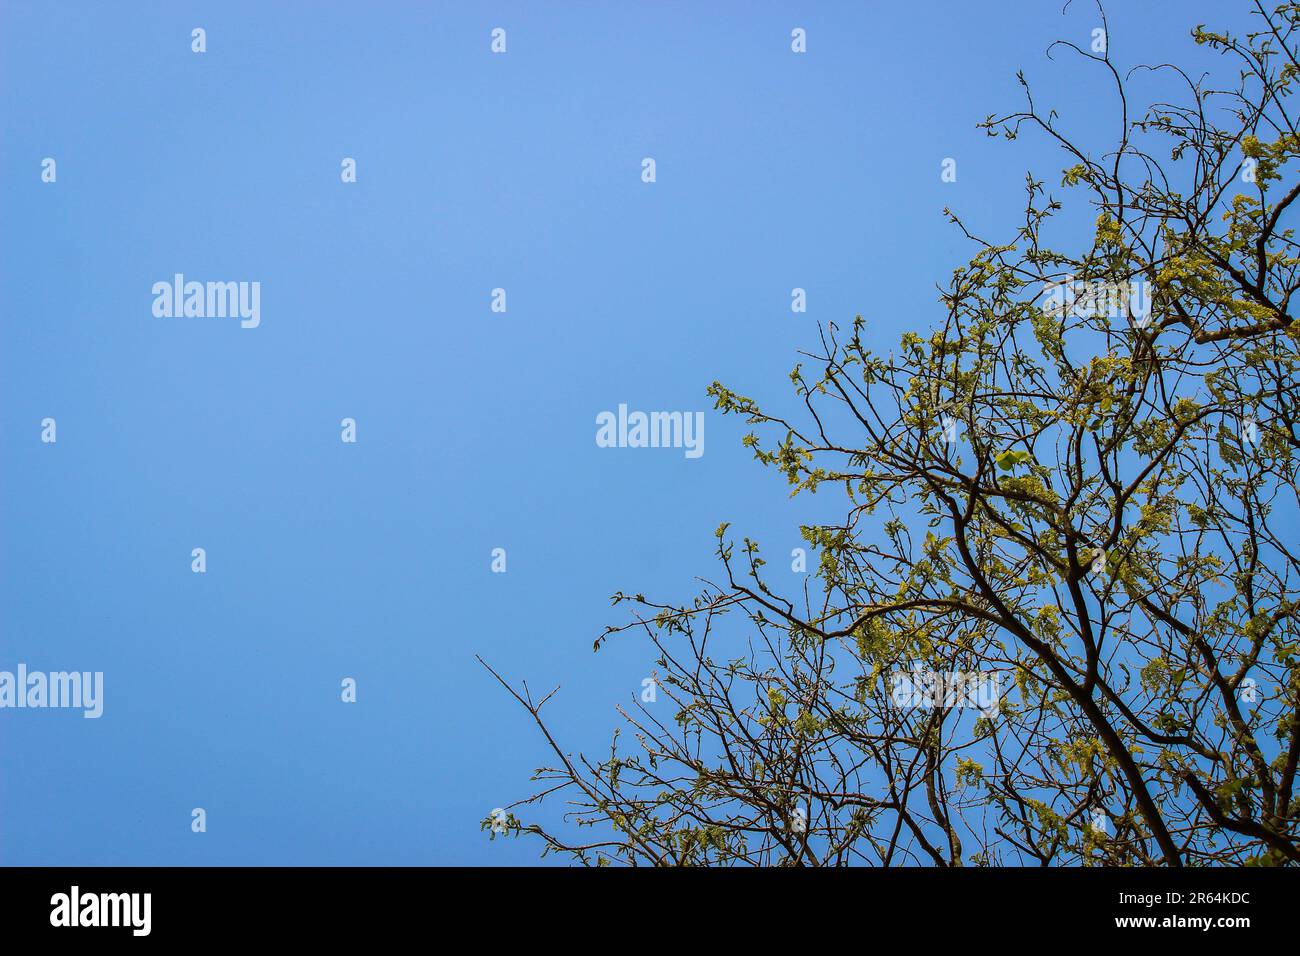 Wir klettern hoch zum blauen Himmel. Wunderschöner blauer Himmelshintergrund mit Baum auf der rechten Seite und offen auf der linken Seite. Für Publikationen, Designs, Poster, Cover. Stockfoto